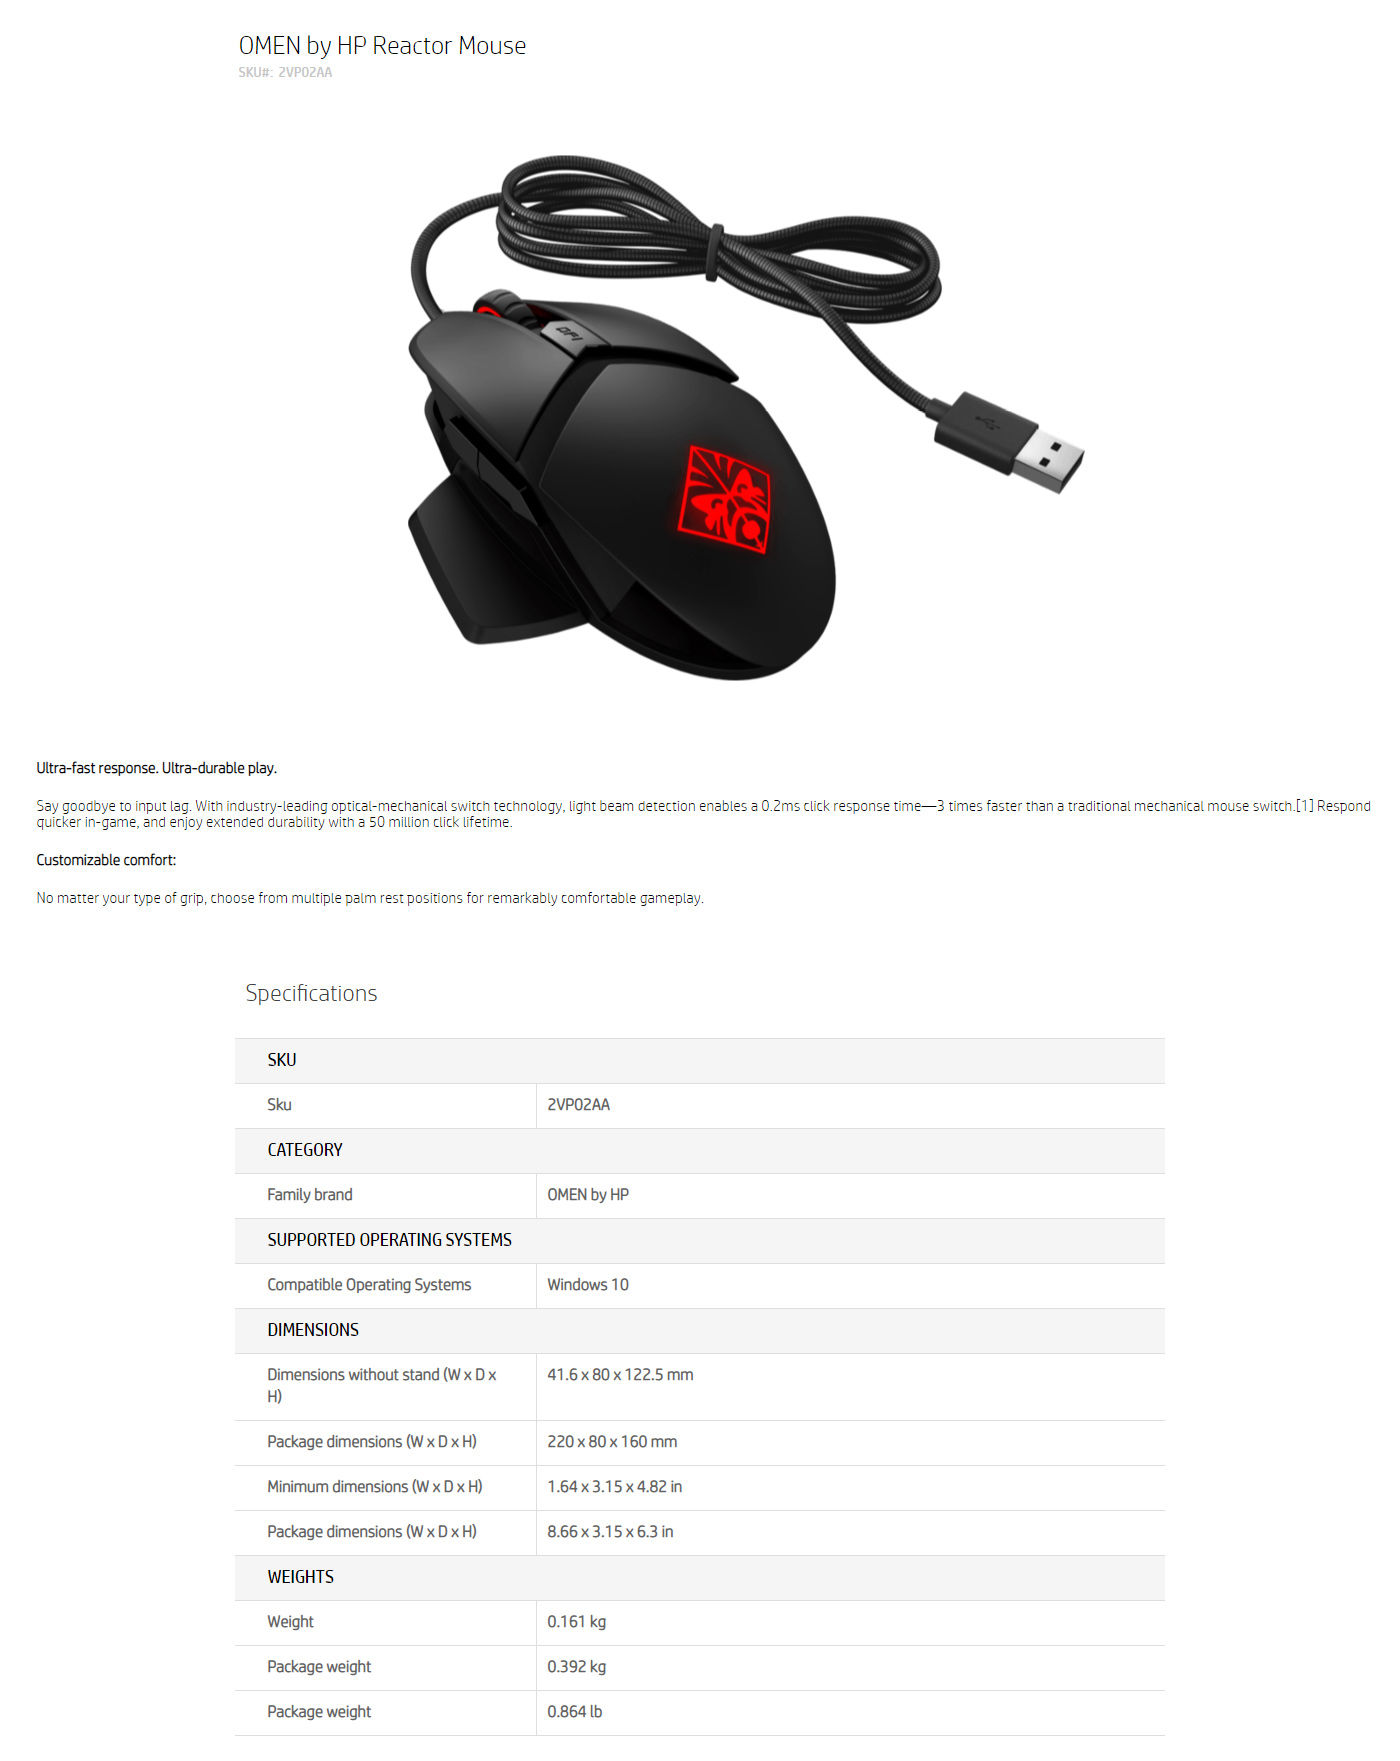  Buy Online HP OMEN Reactor Mouse (2VP02AA)